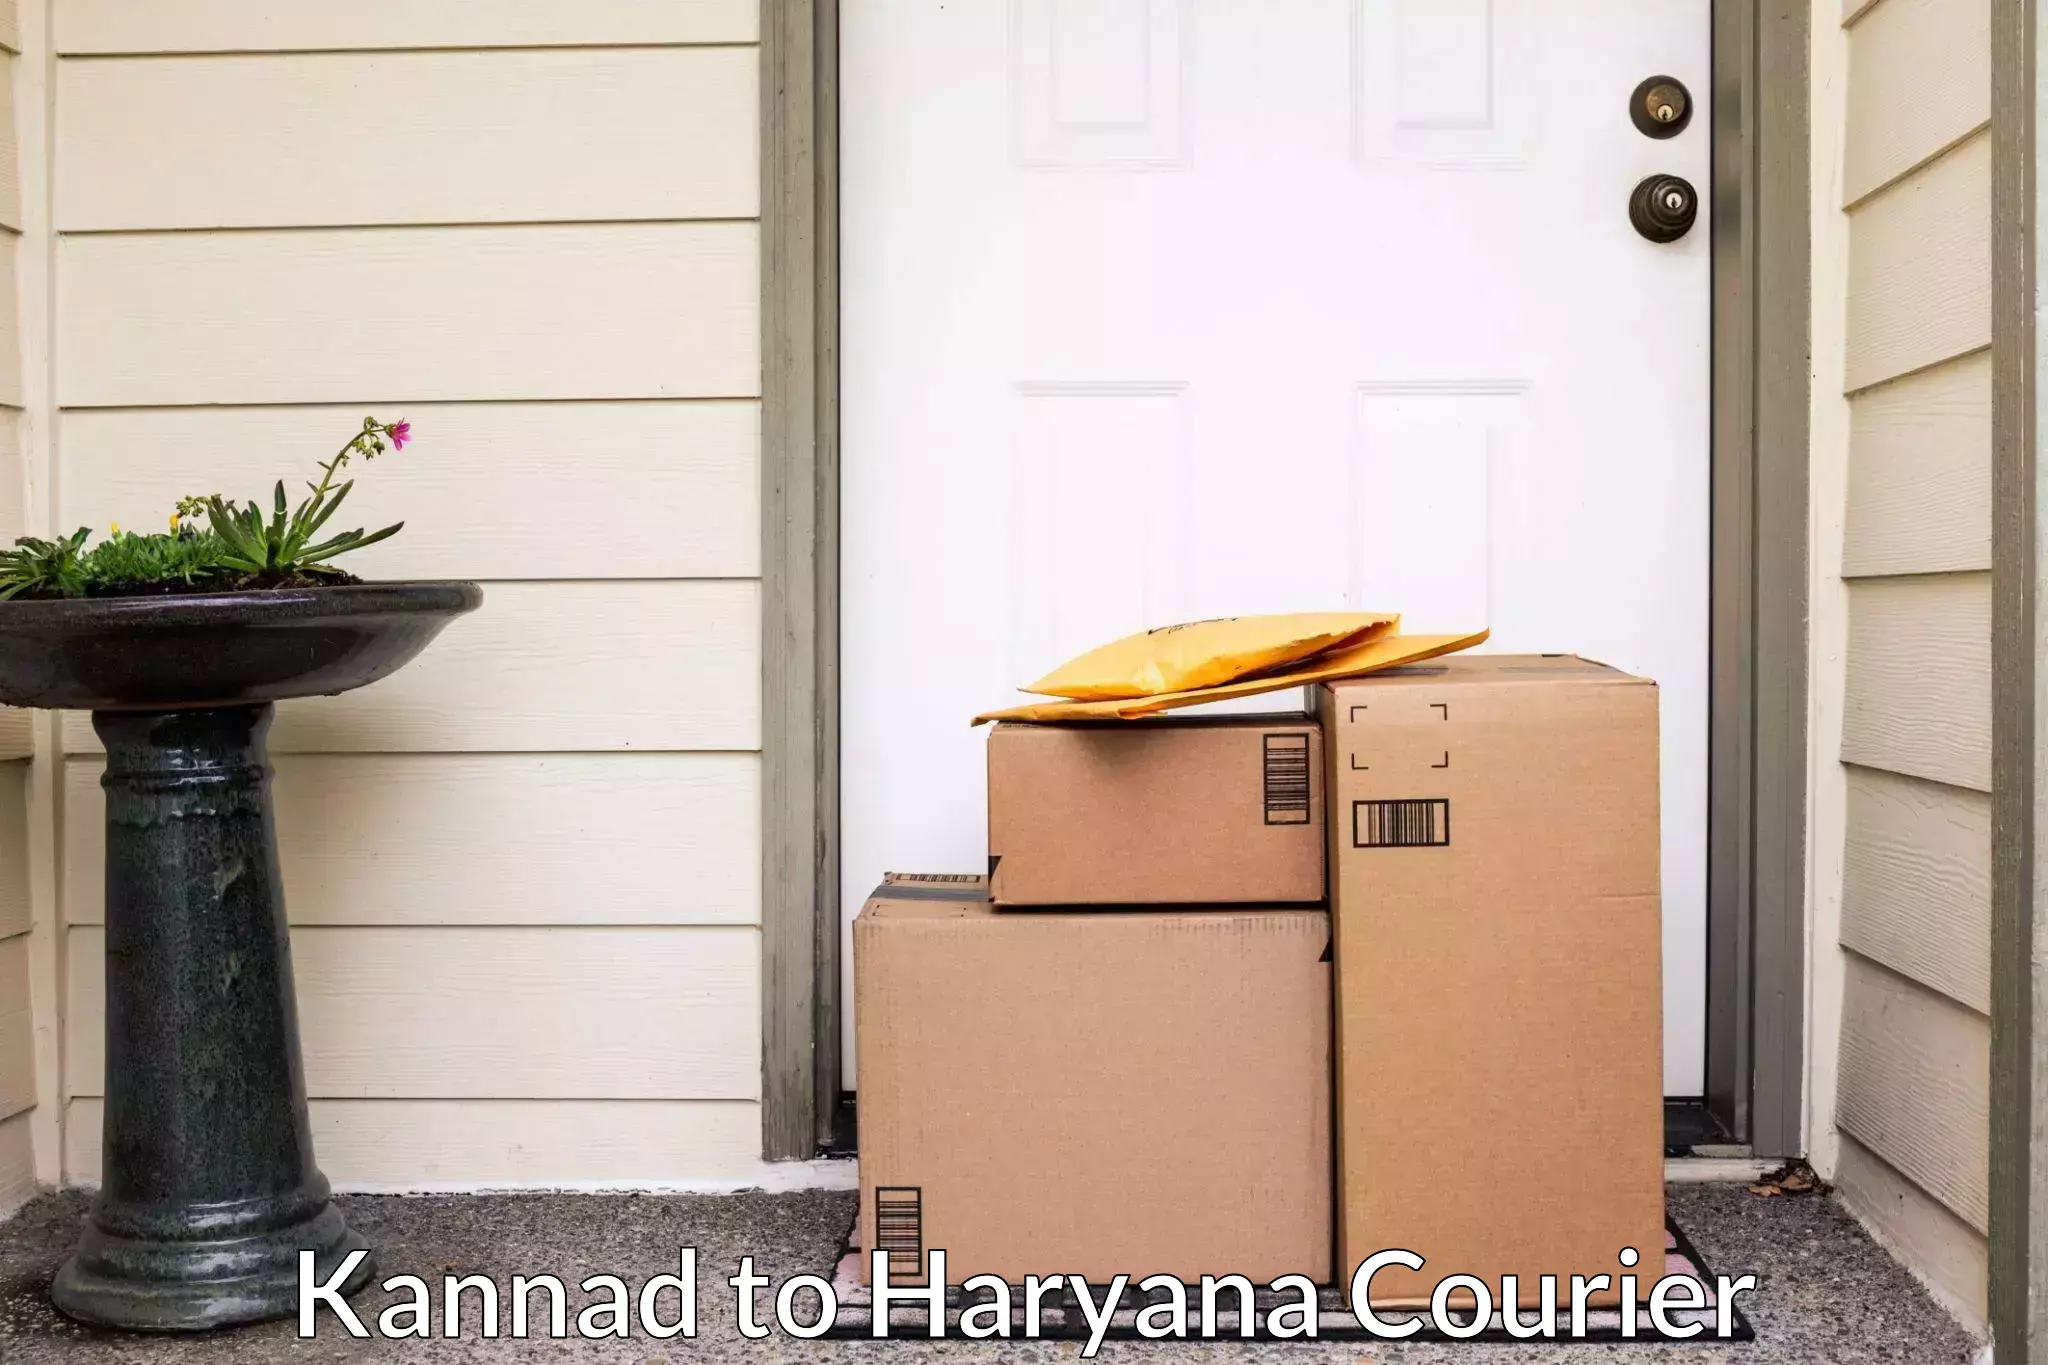 Professional home shifting Kannad to Gurgaon